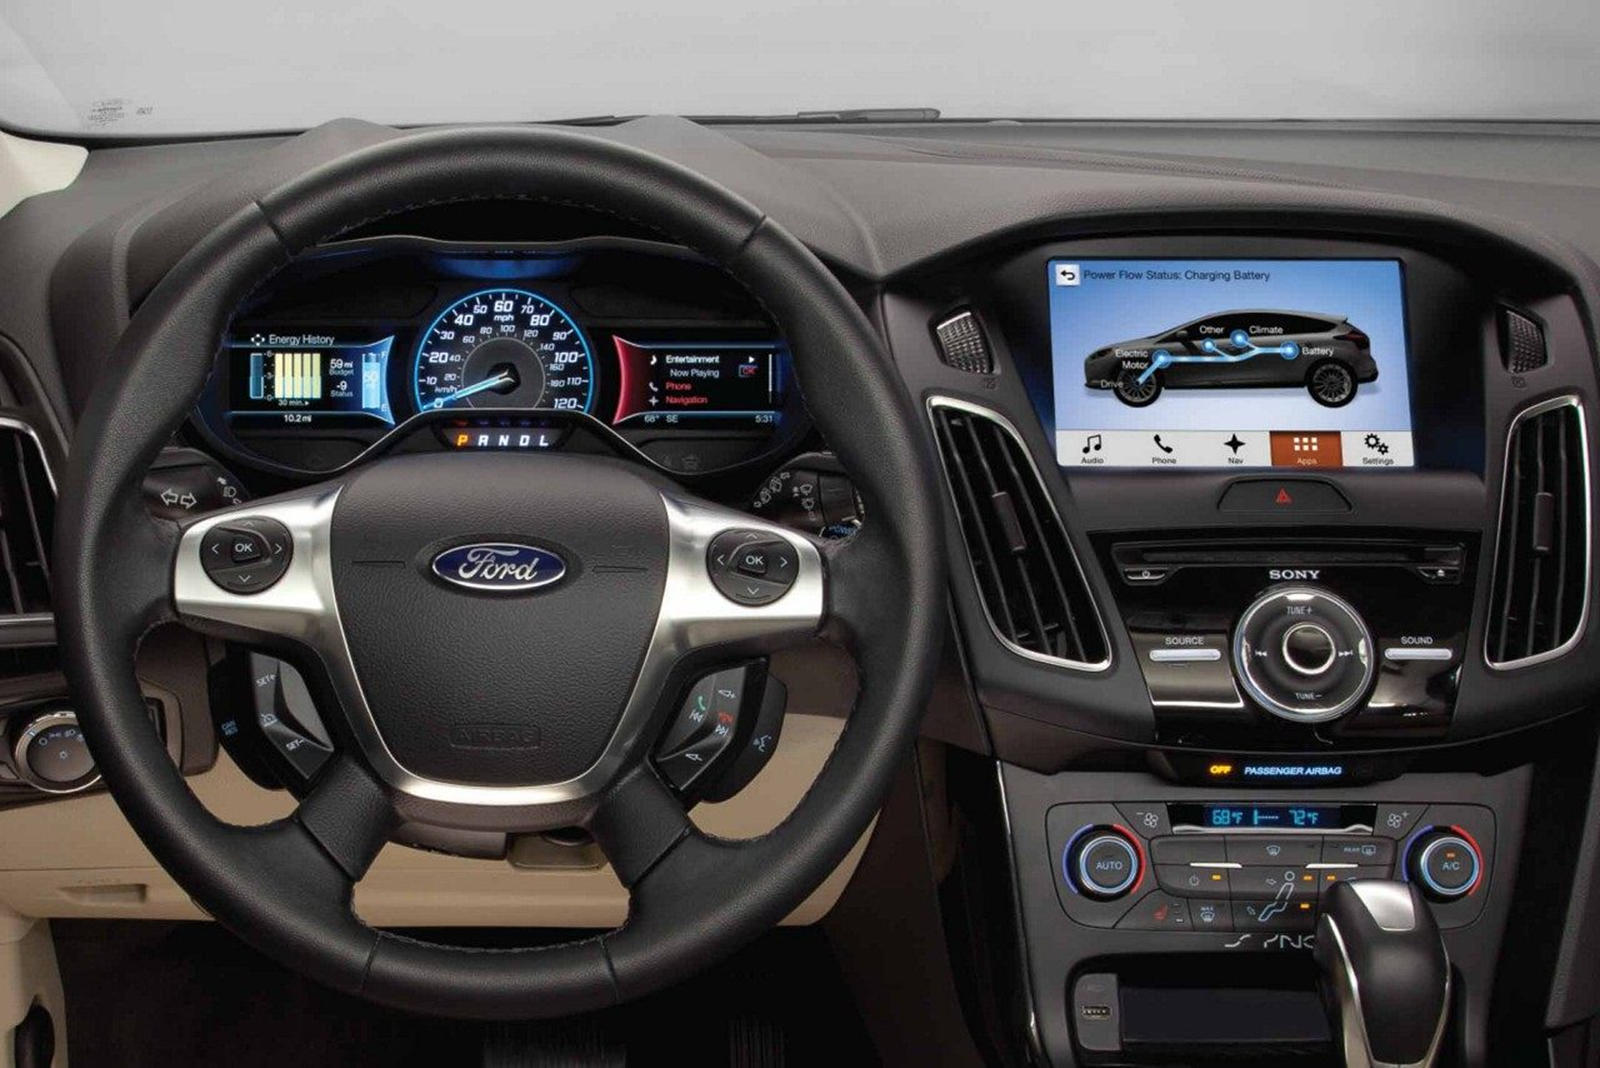 2013 Ford Focus Electric Interior 4